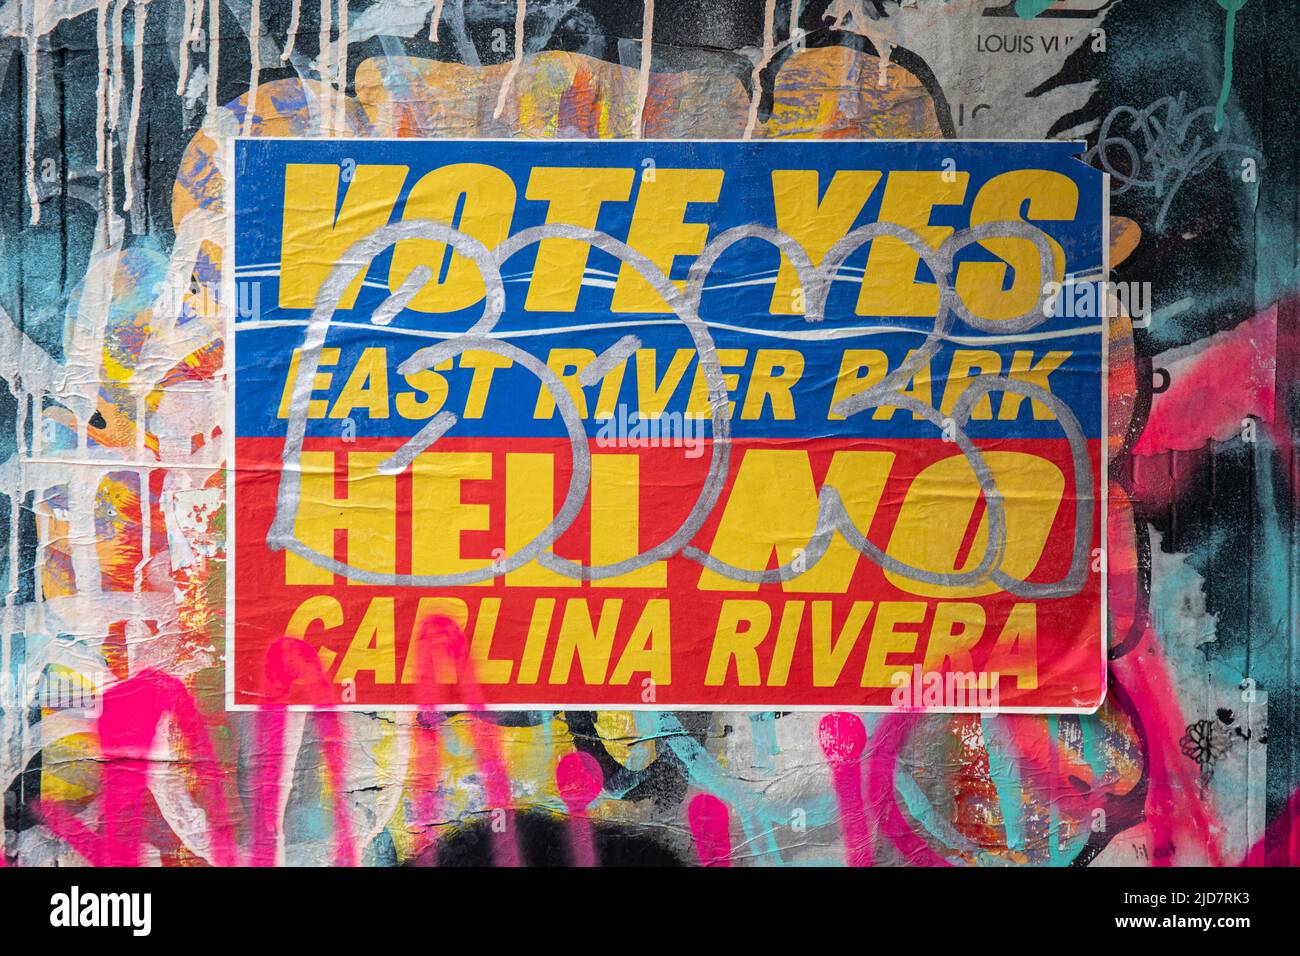 Votez Oui East River Park. Hell No Carlina Rivera. Autocollant politique dans le quartier Alphabet City de New York, États-Unis d'Amérique. Banque D'Images